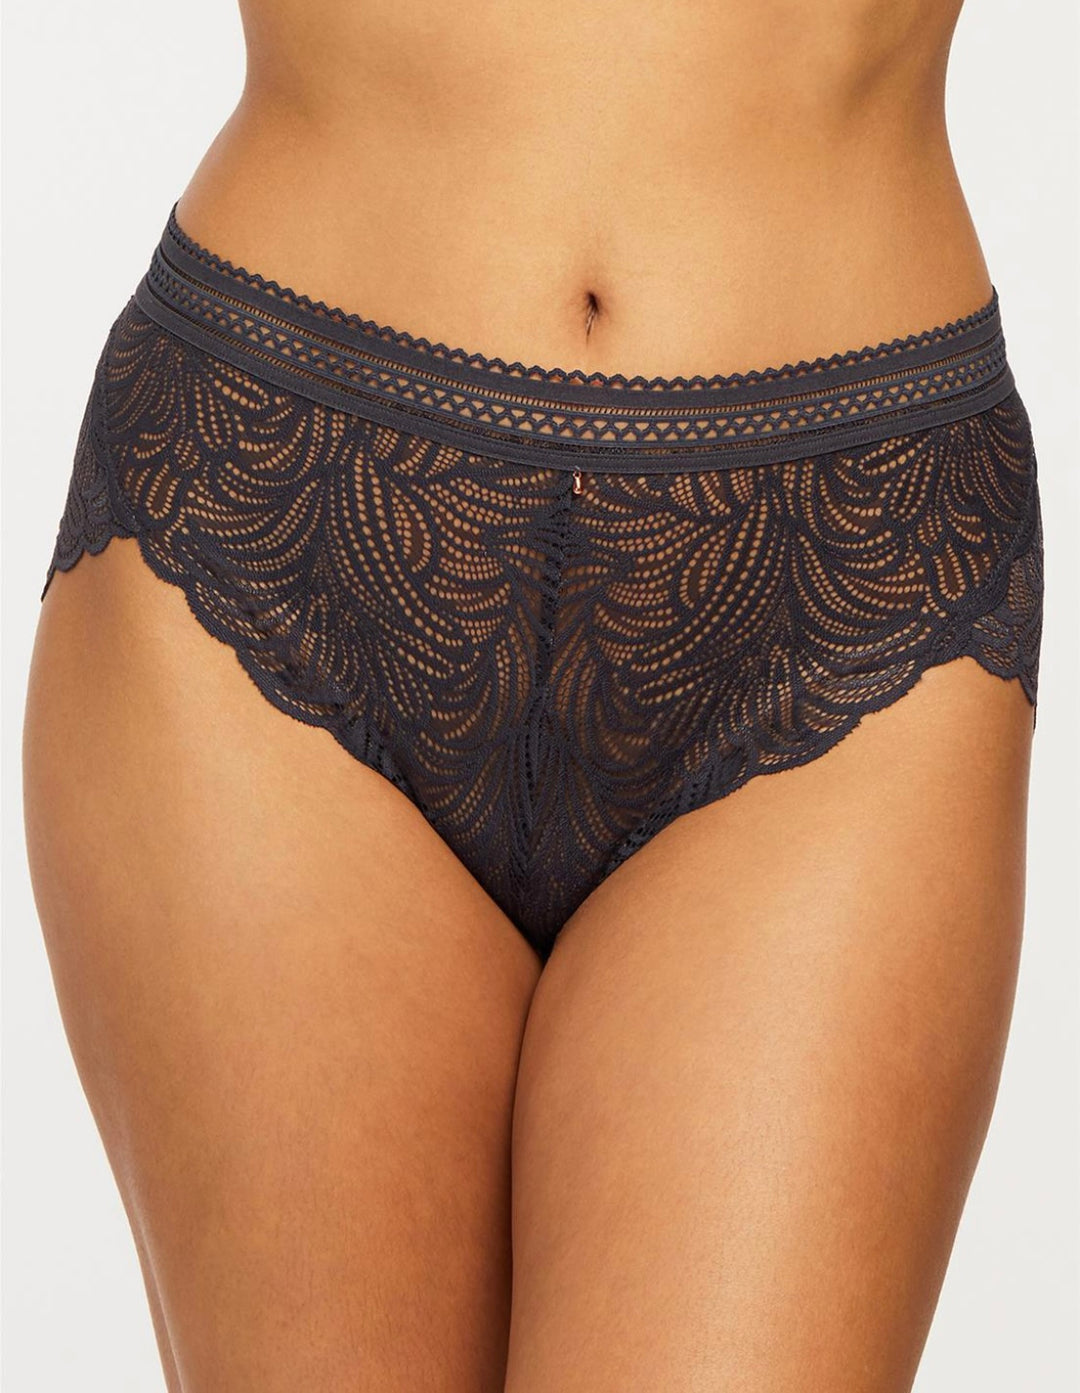 Women Sexy High Waist Lingerie Lace Briefs Mesh Panties Hollow Out Underwear